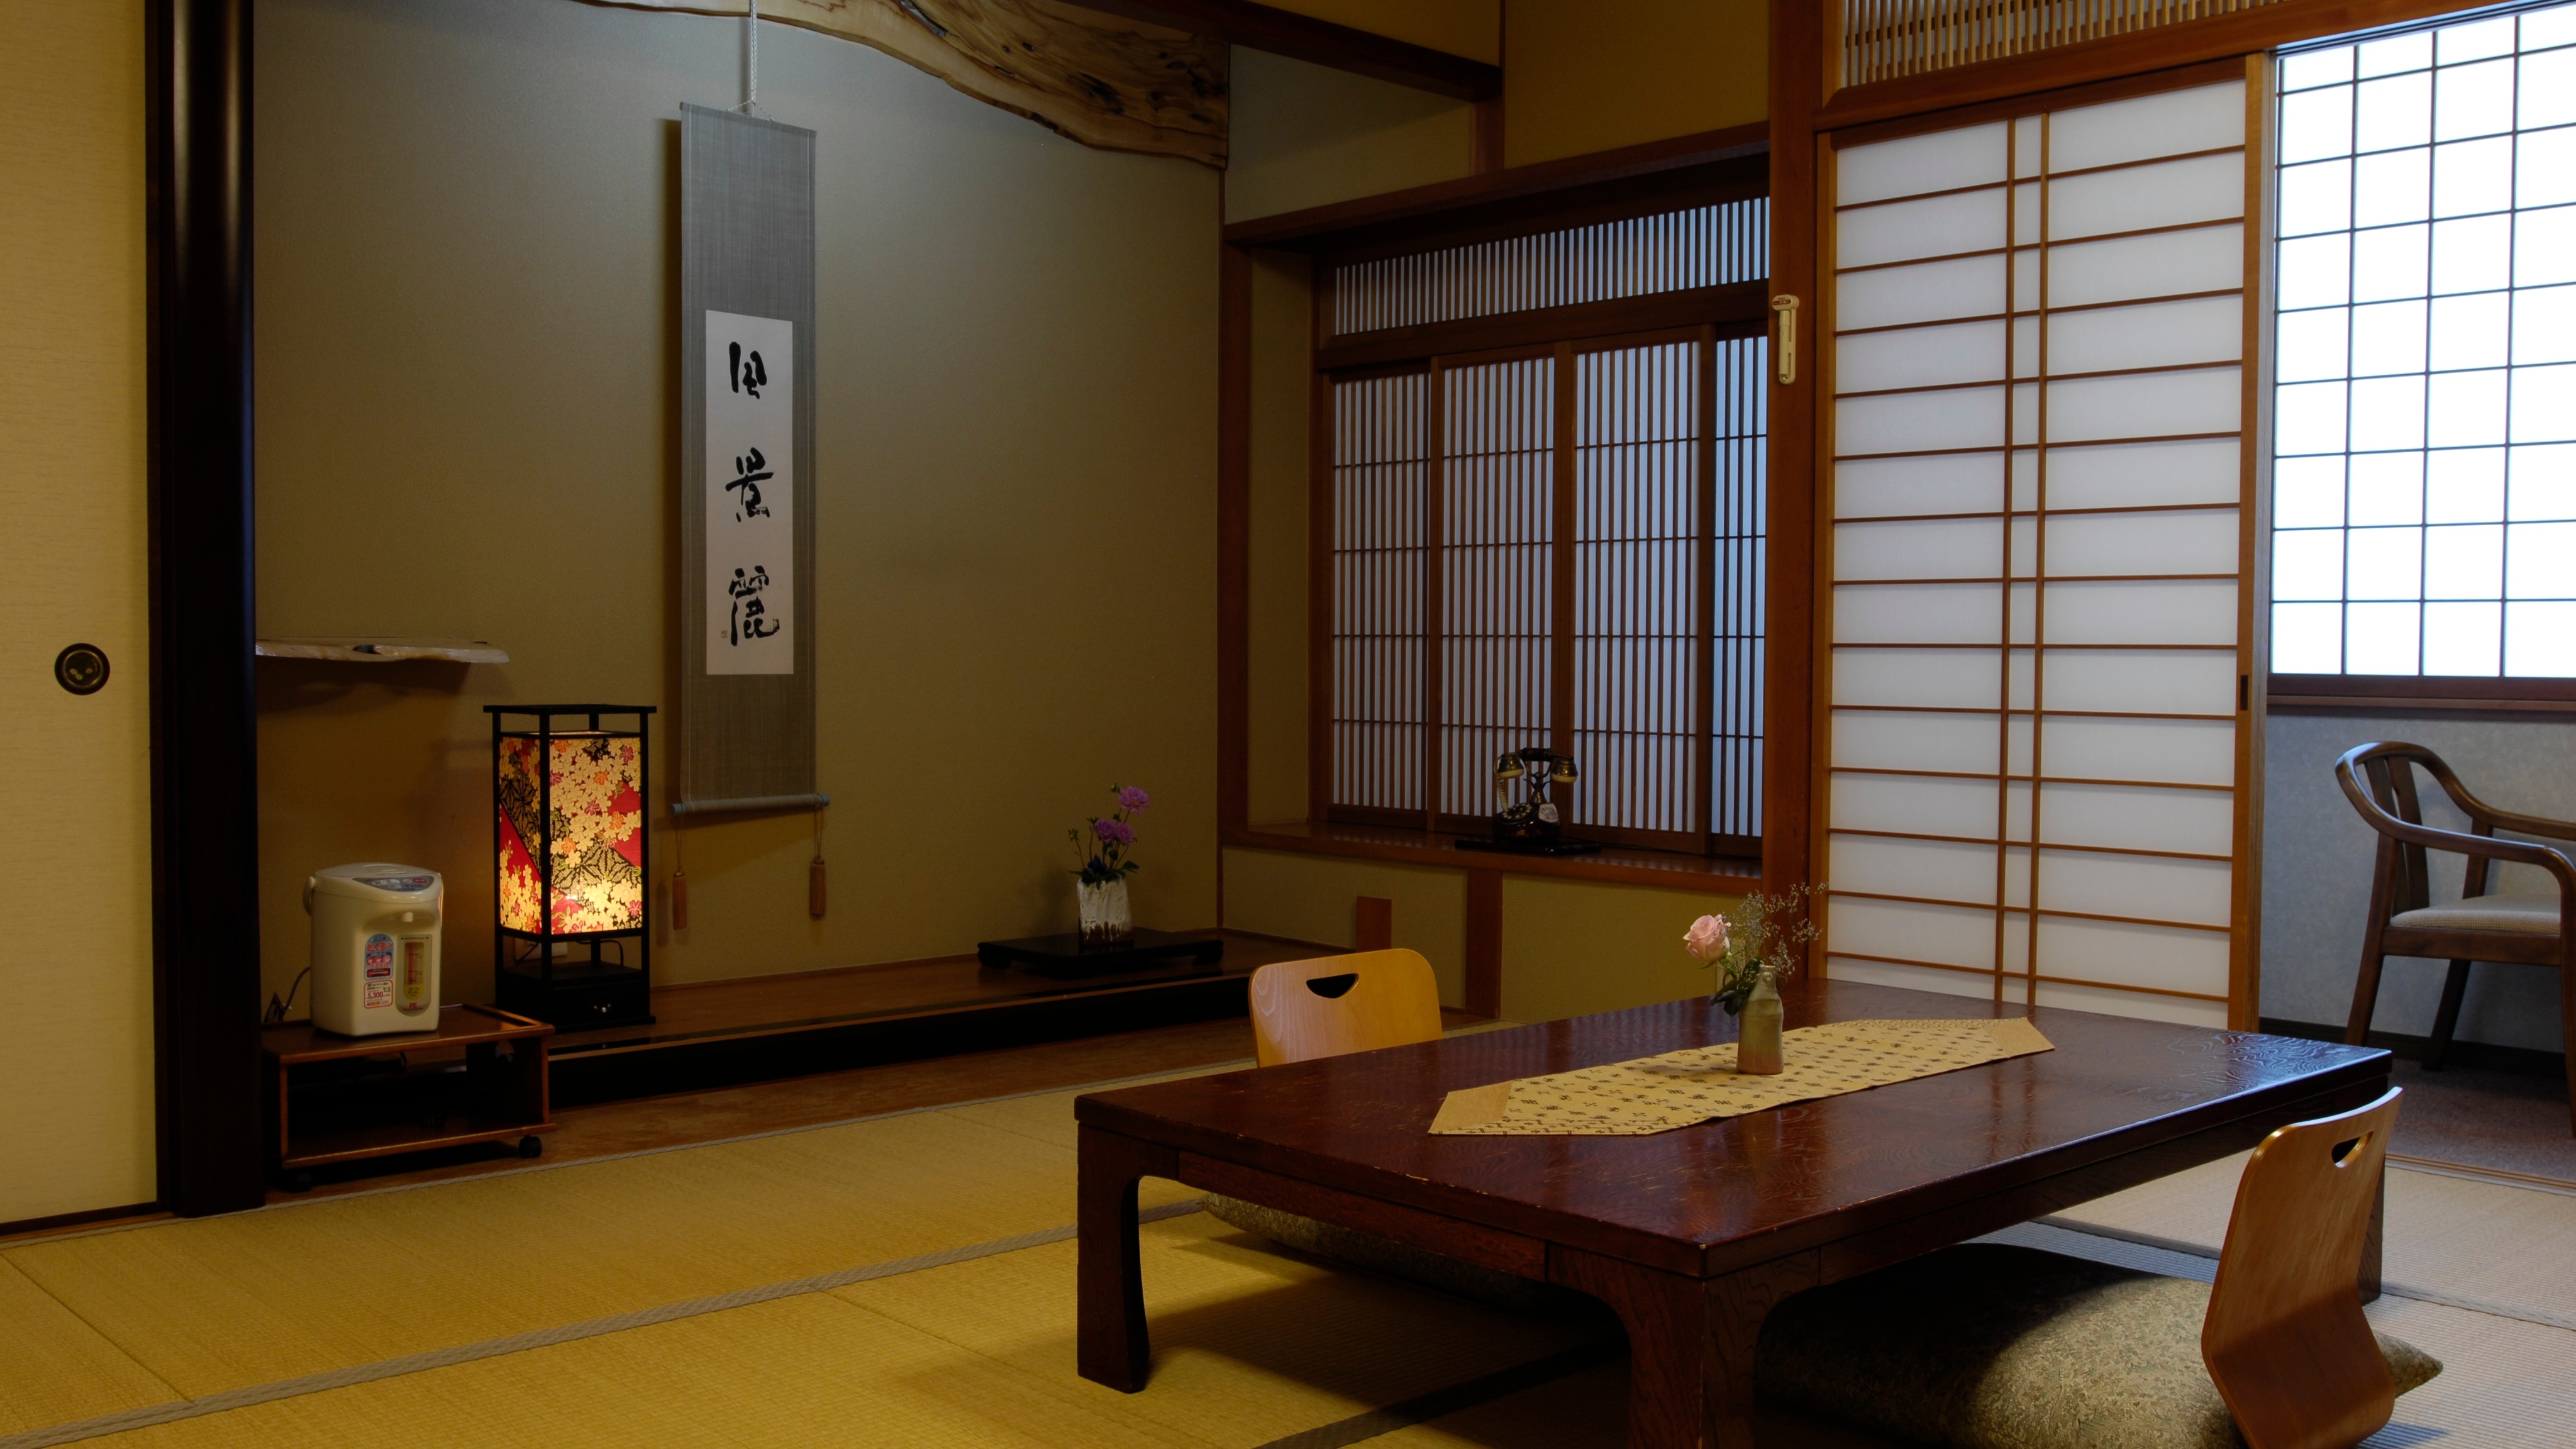 ■ 10張榻榻米的日式房間示例